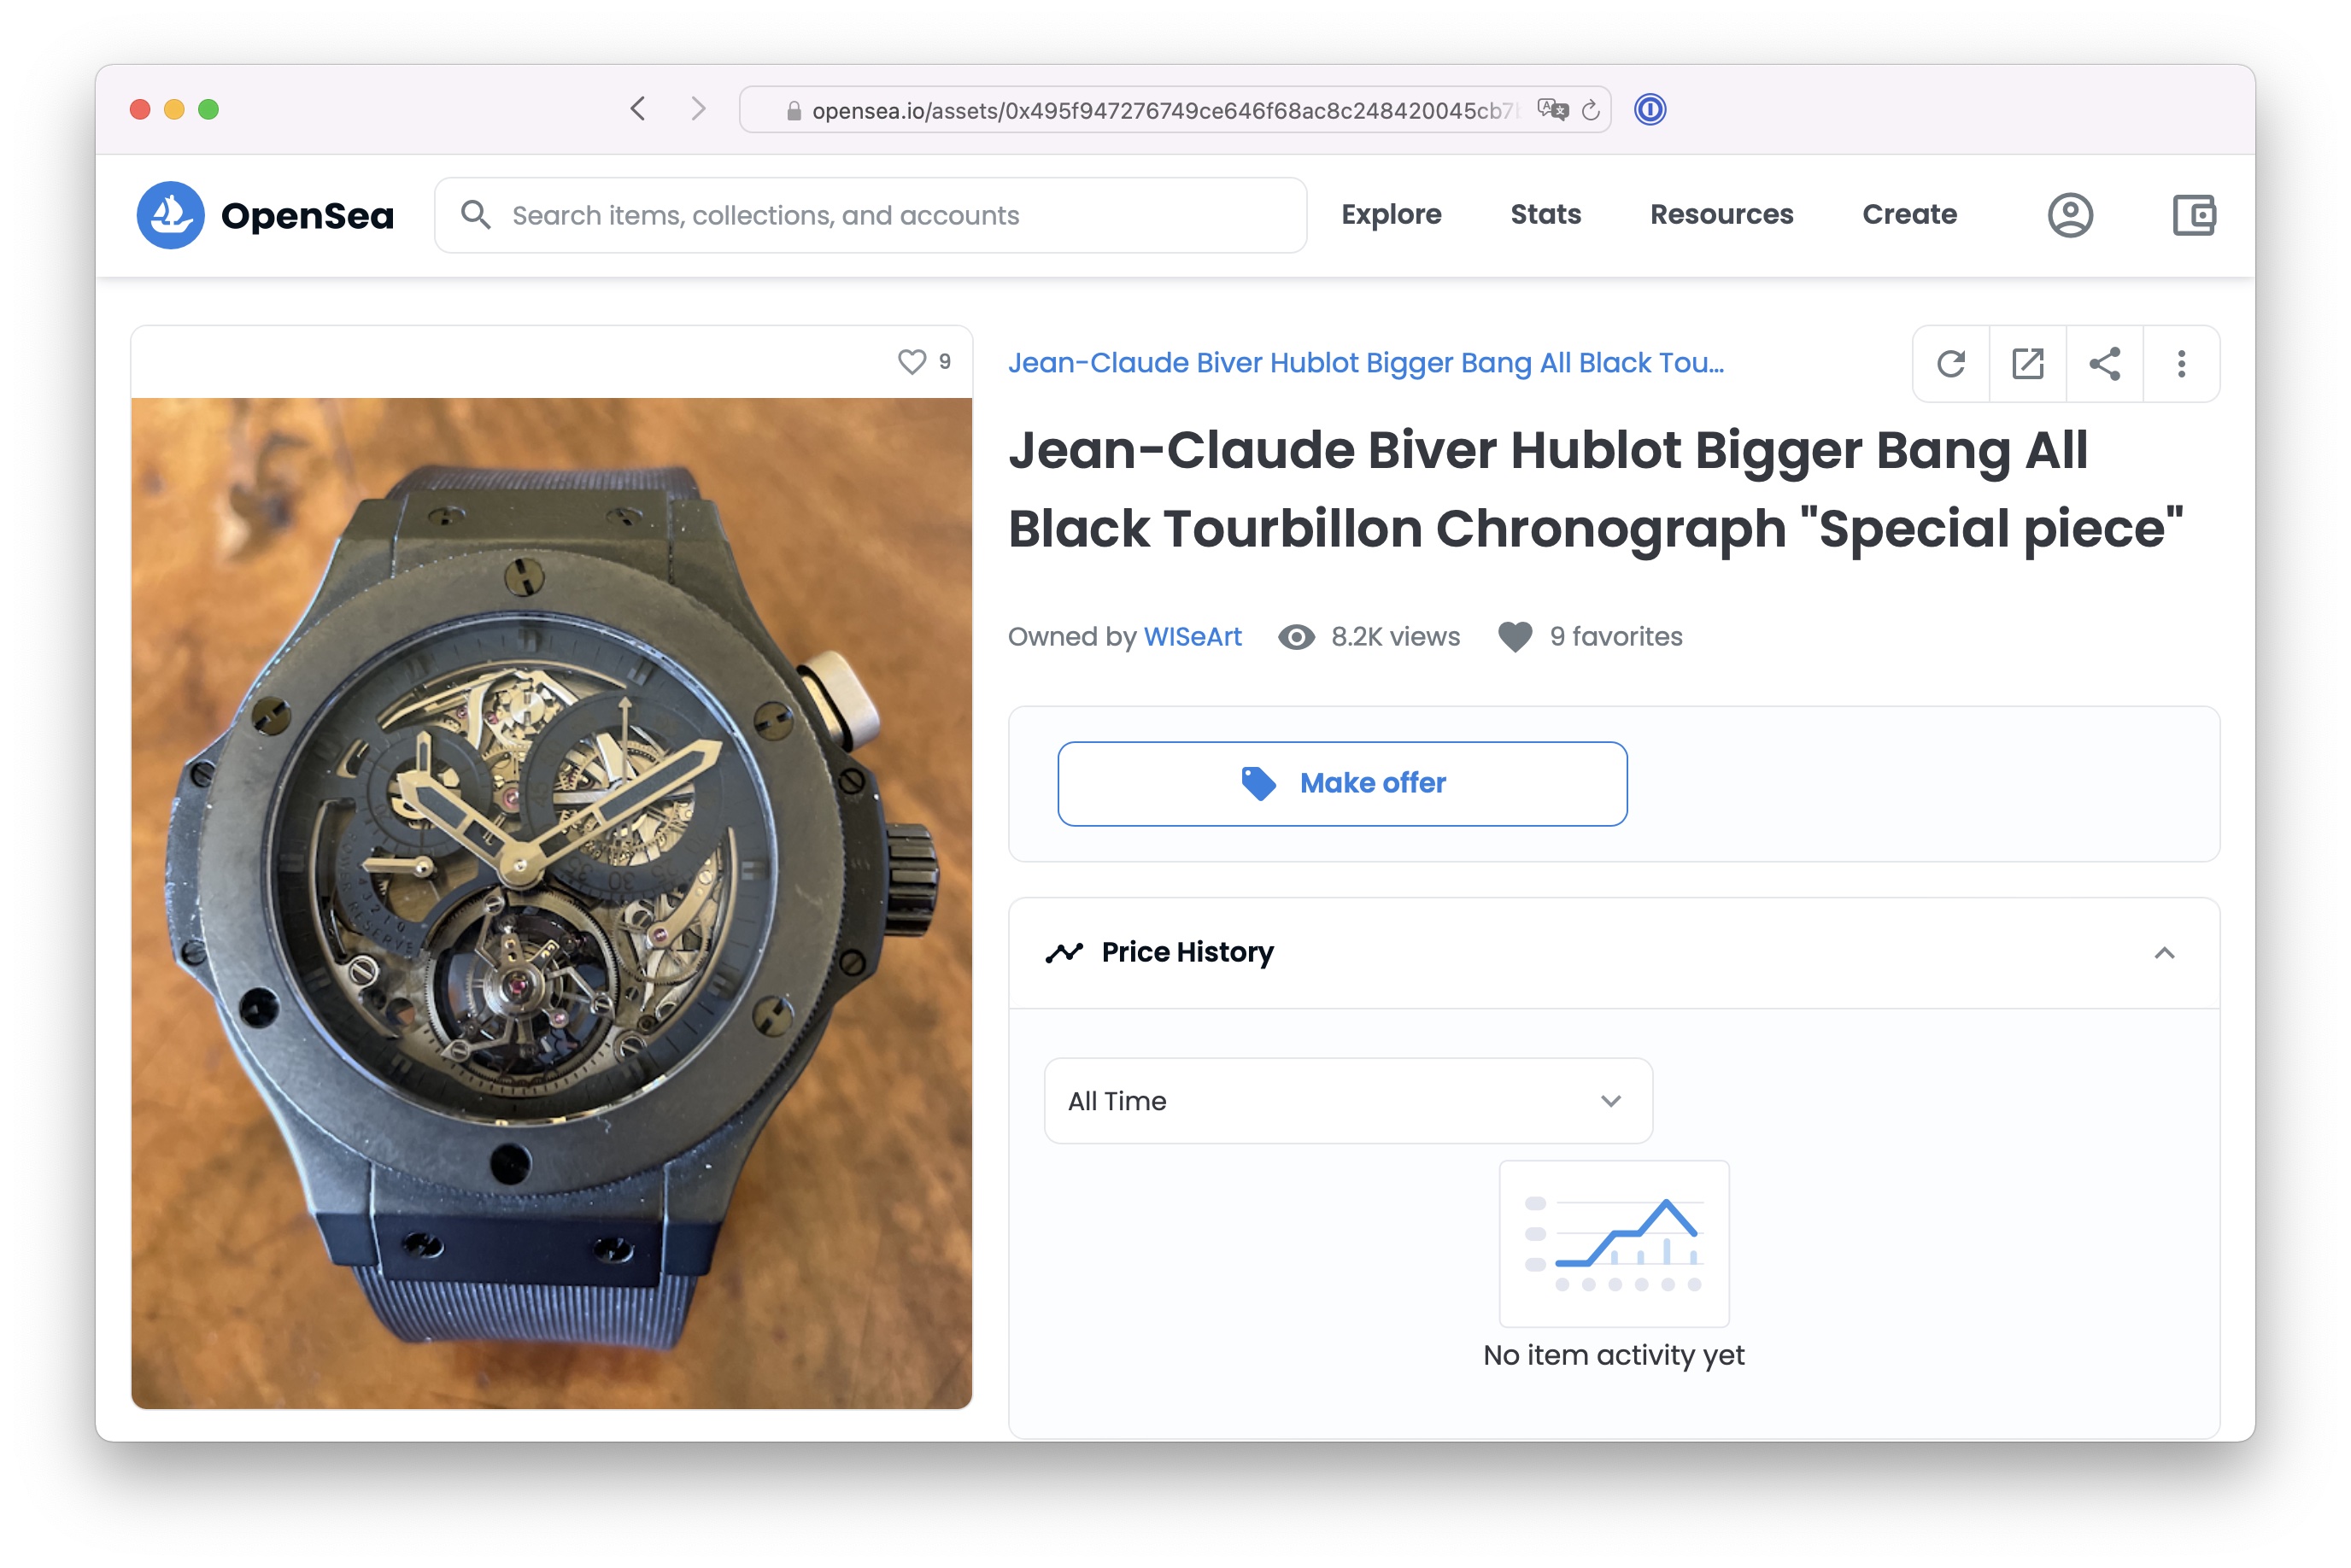 Jean-Claude Biver Hublot Bigger Bang All Black Tourbillon Chronograph “Special piece”